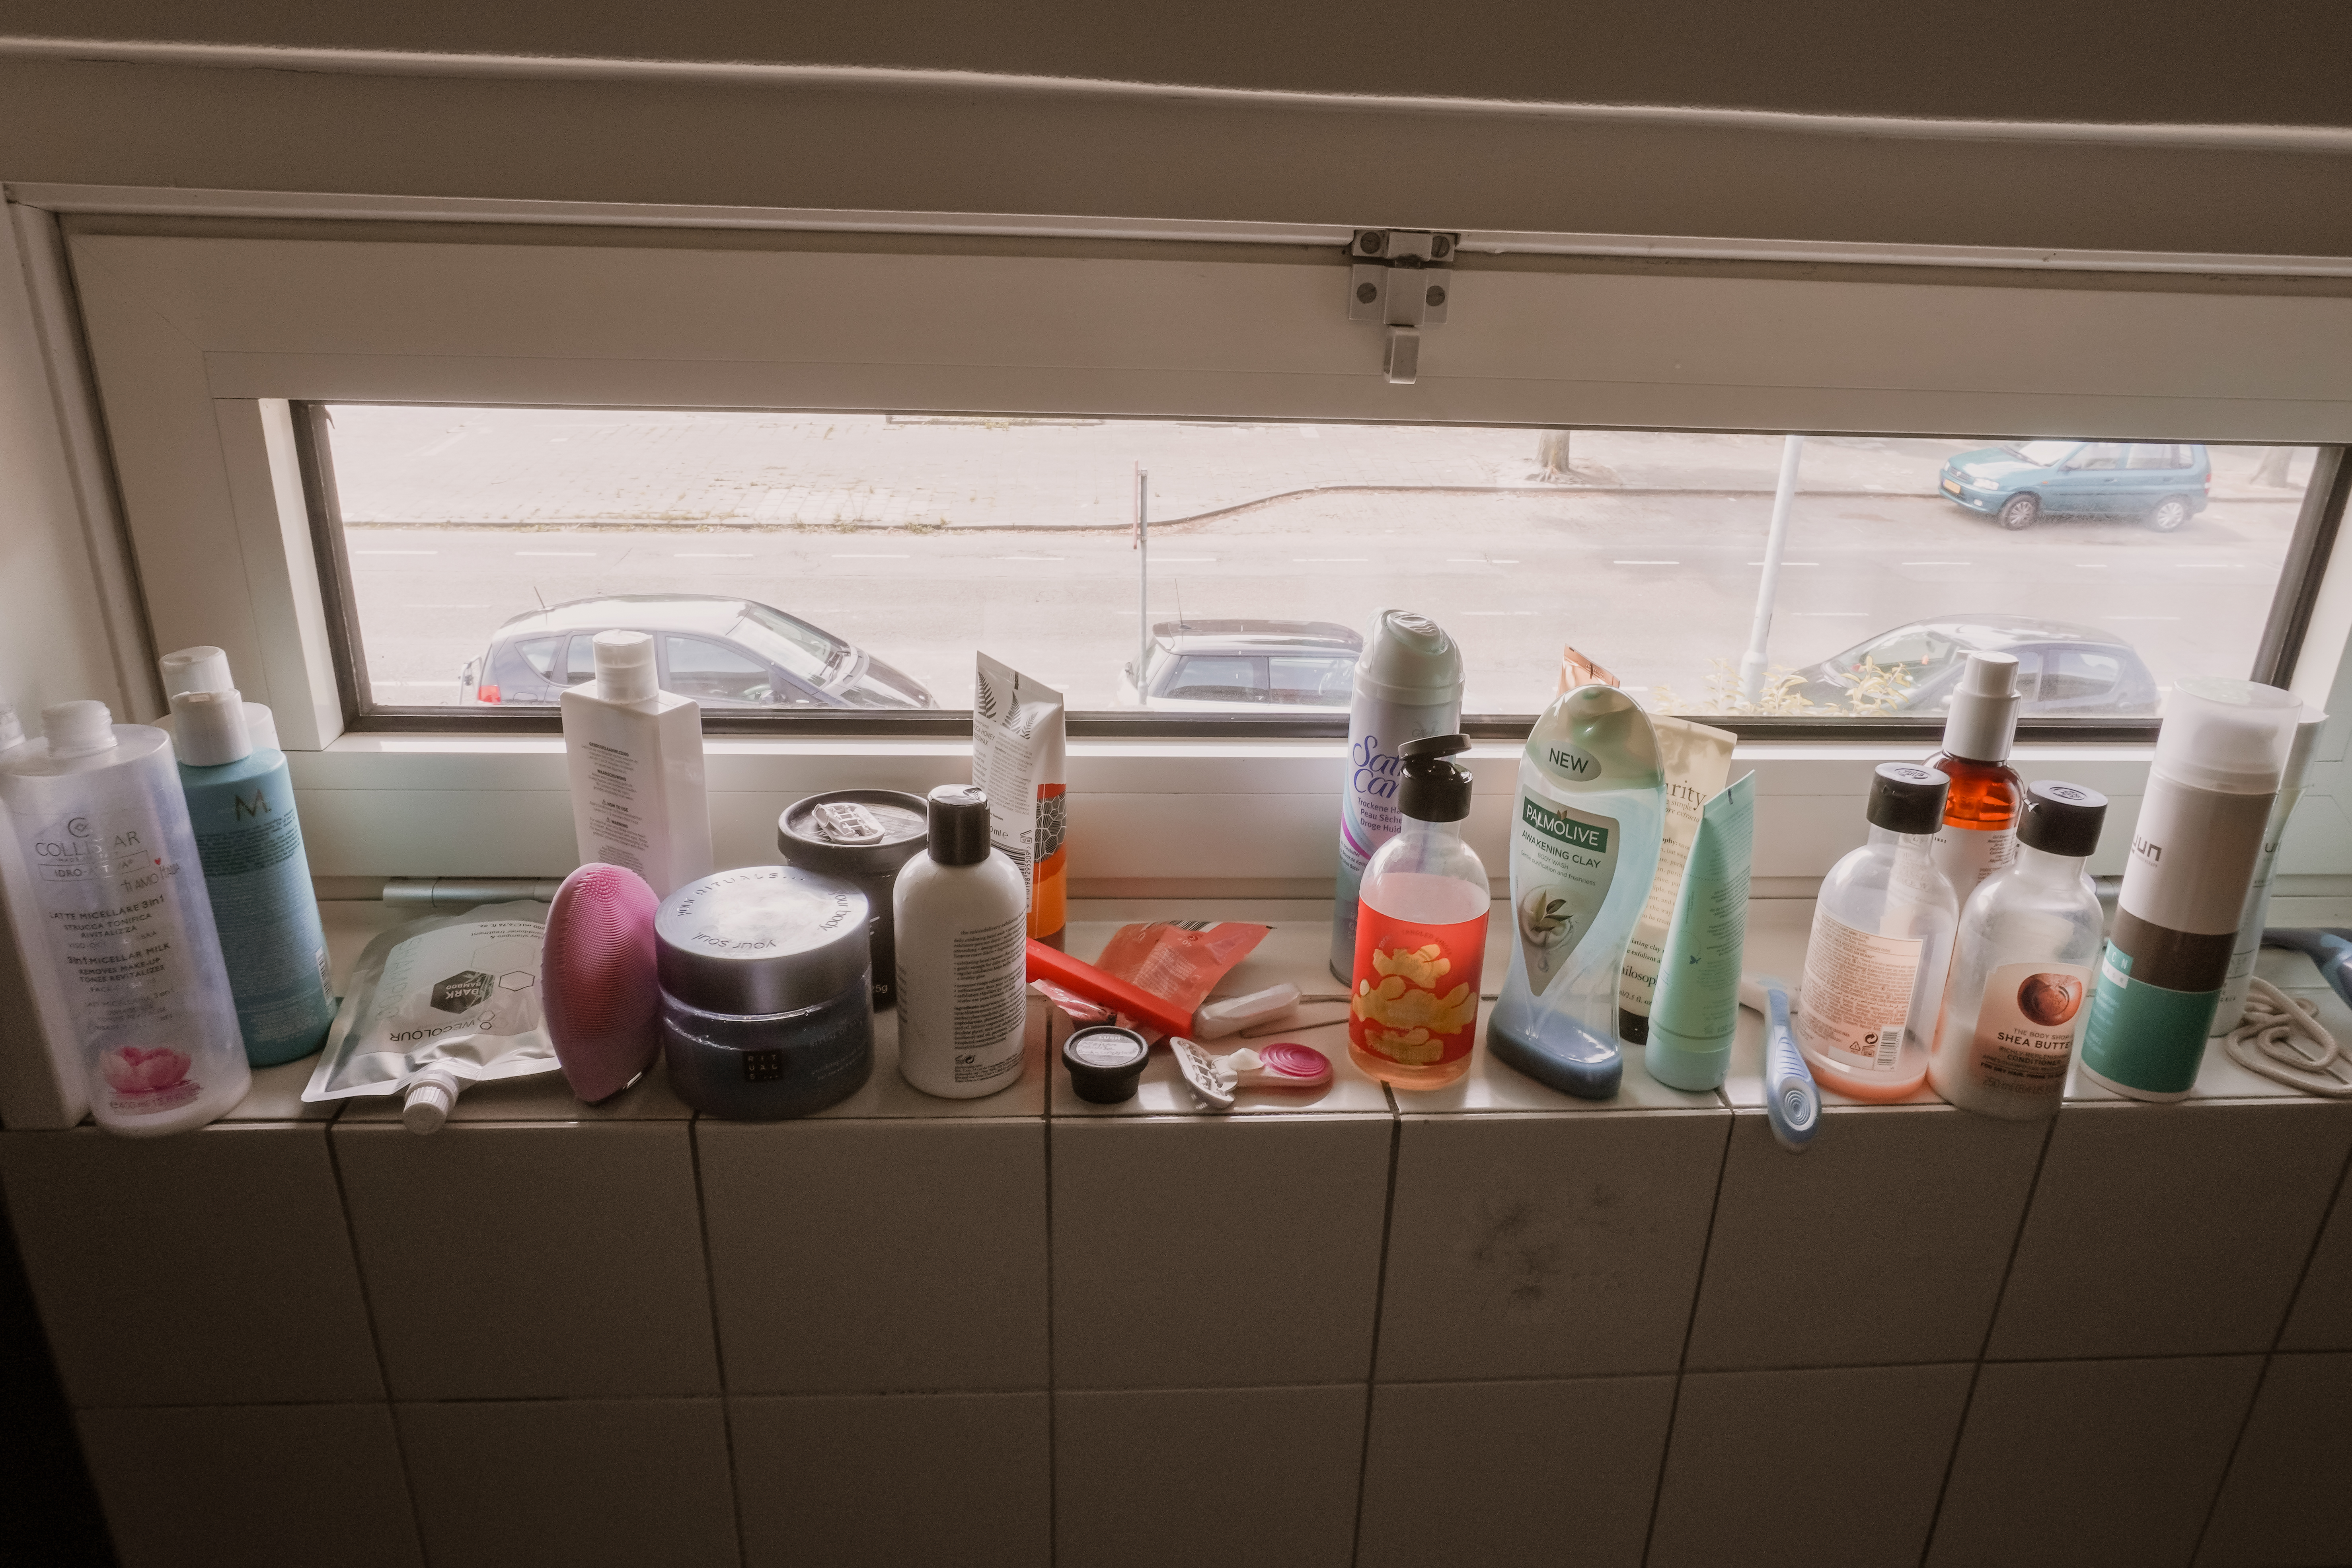 badkamer opruimen inspiratie organiseren